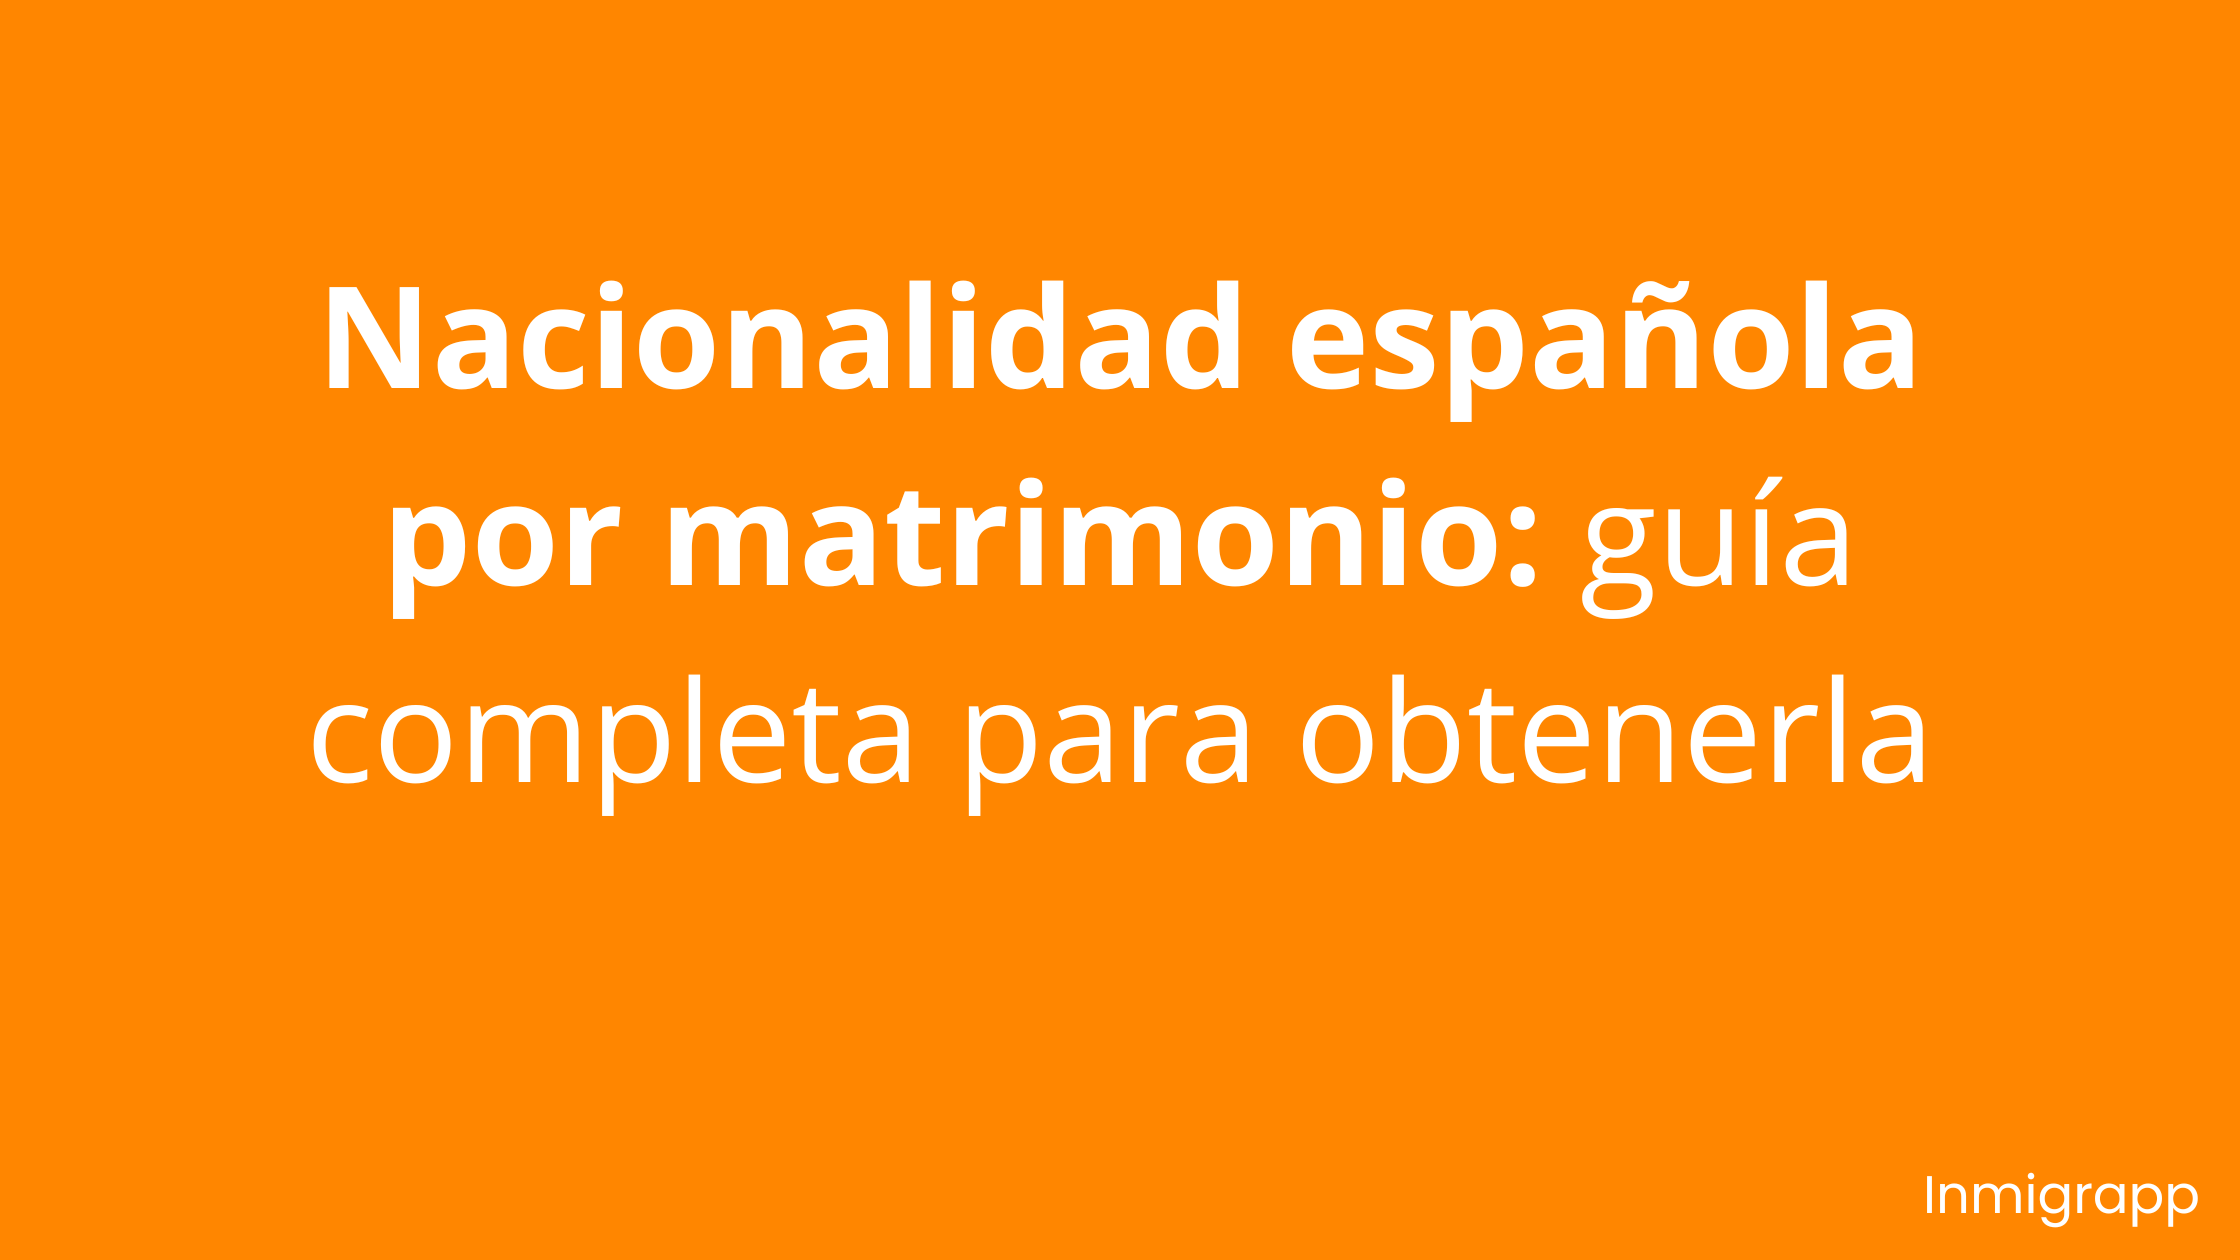 Nacionalidad española por matrimonio: guía completa para obtenerla